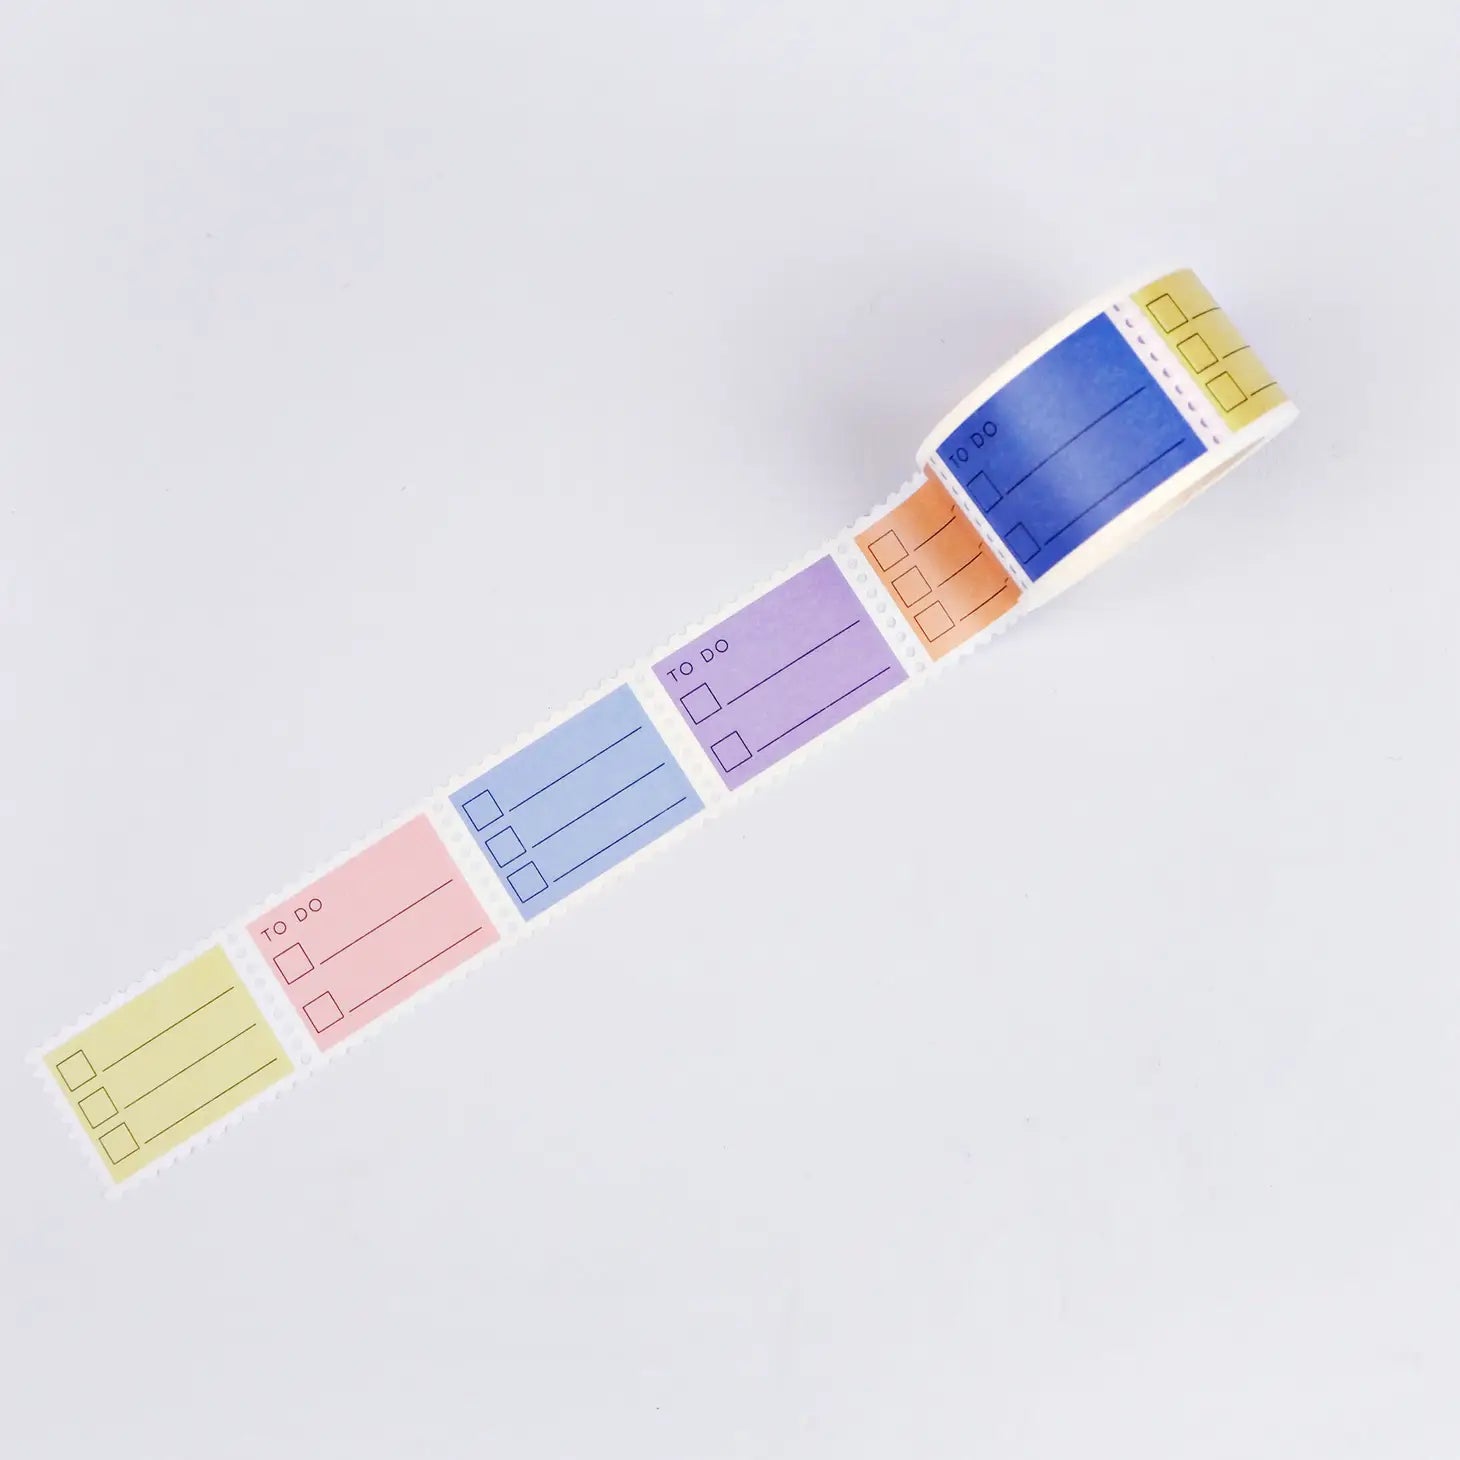 Pastel To Do Stamp Washi Tape